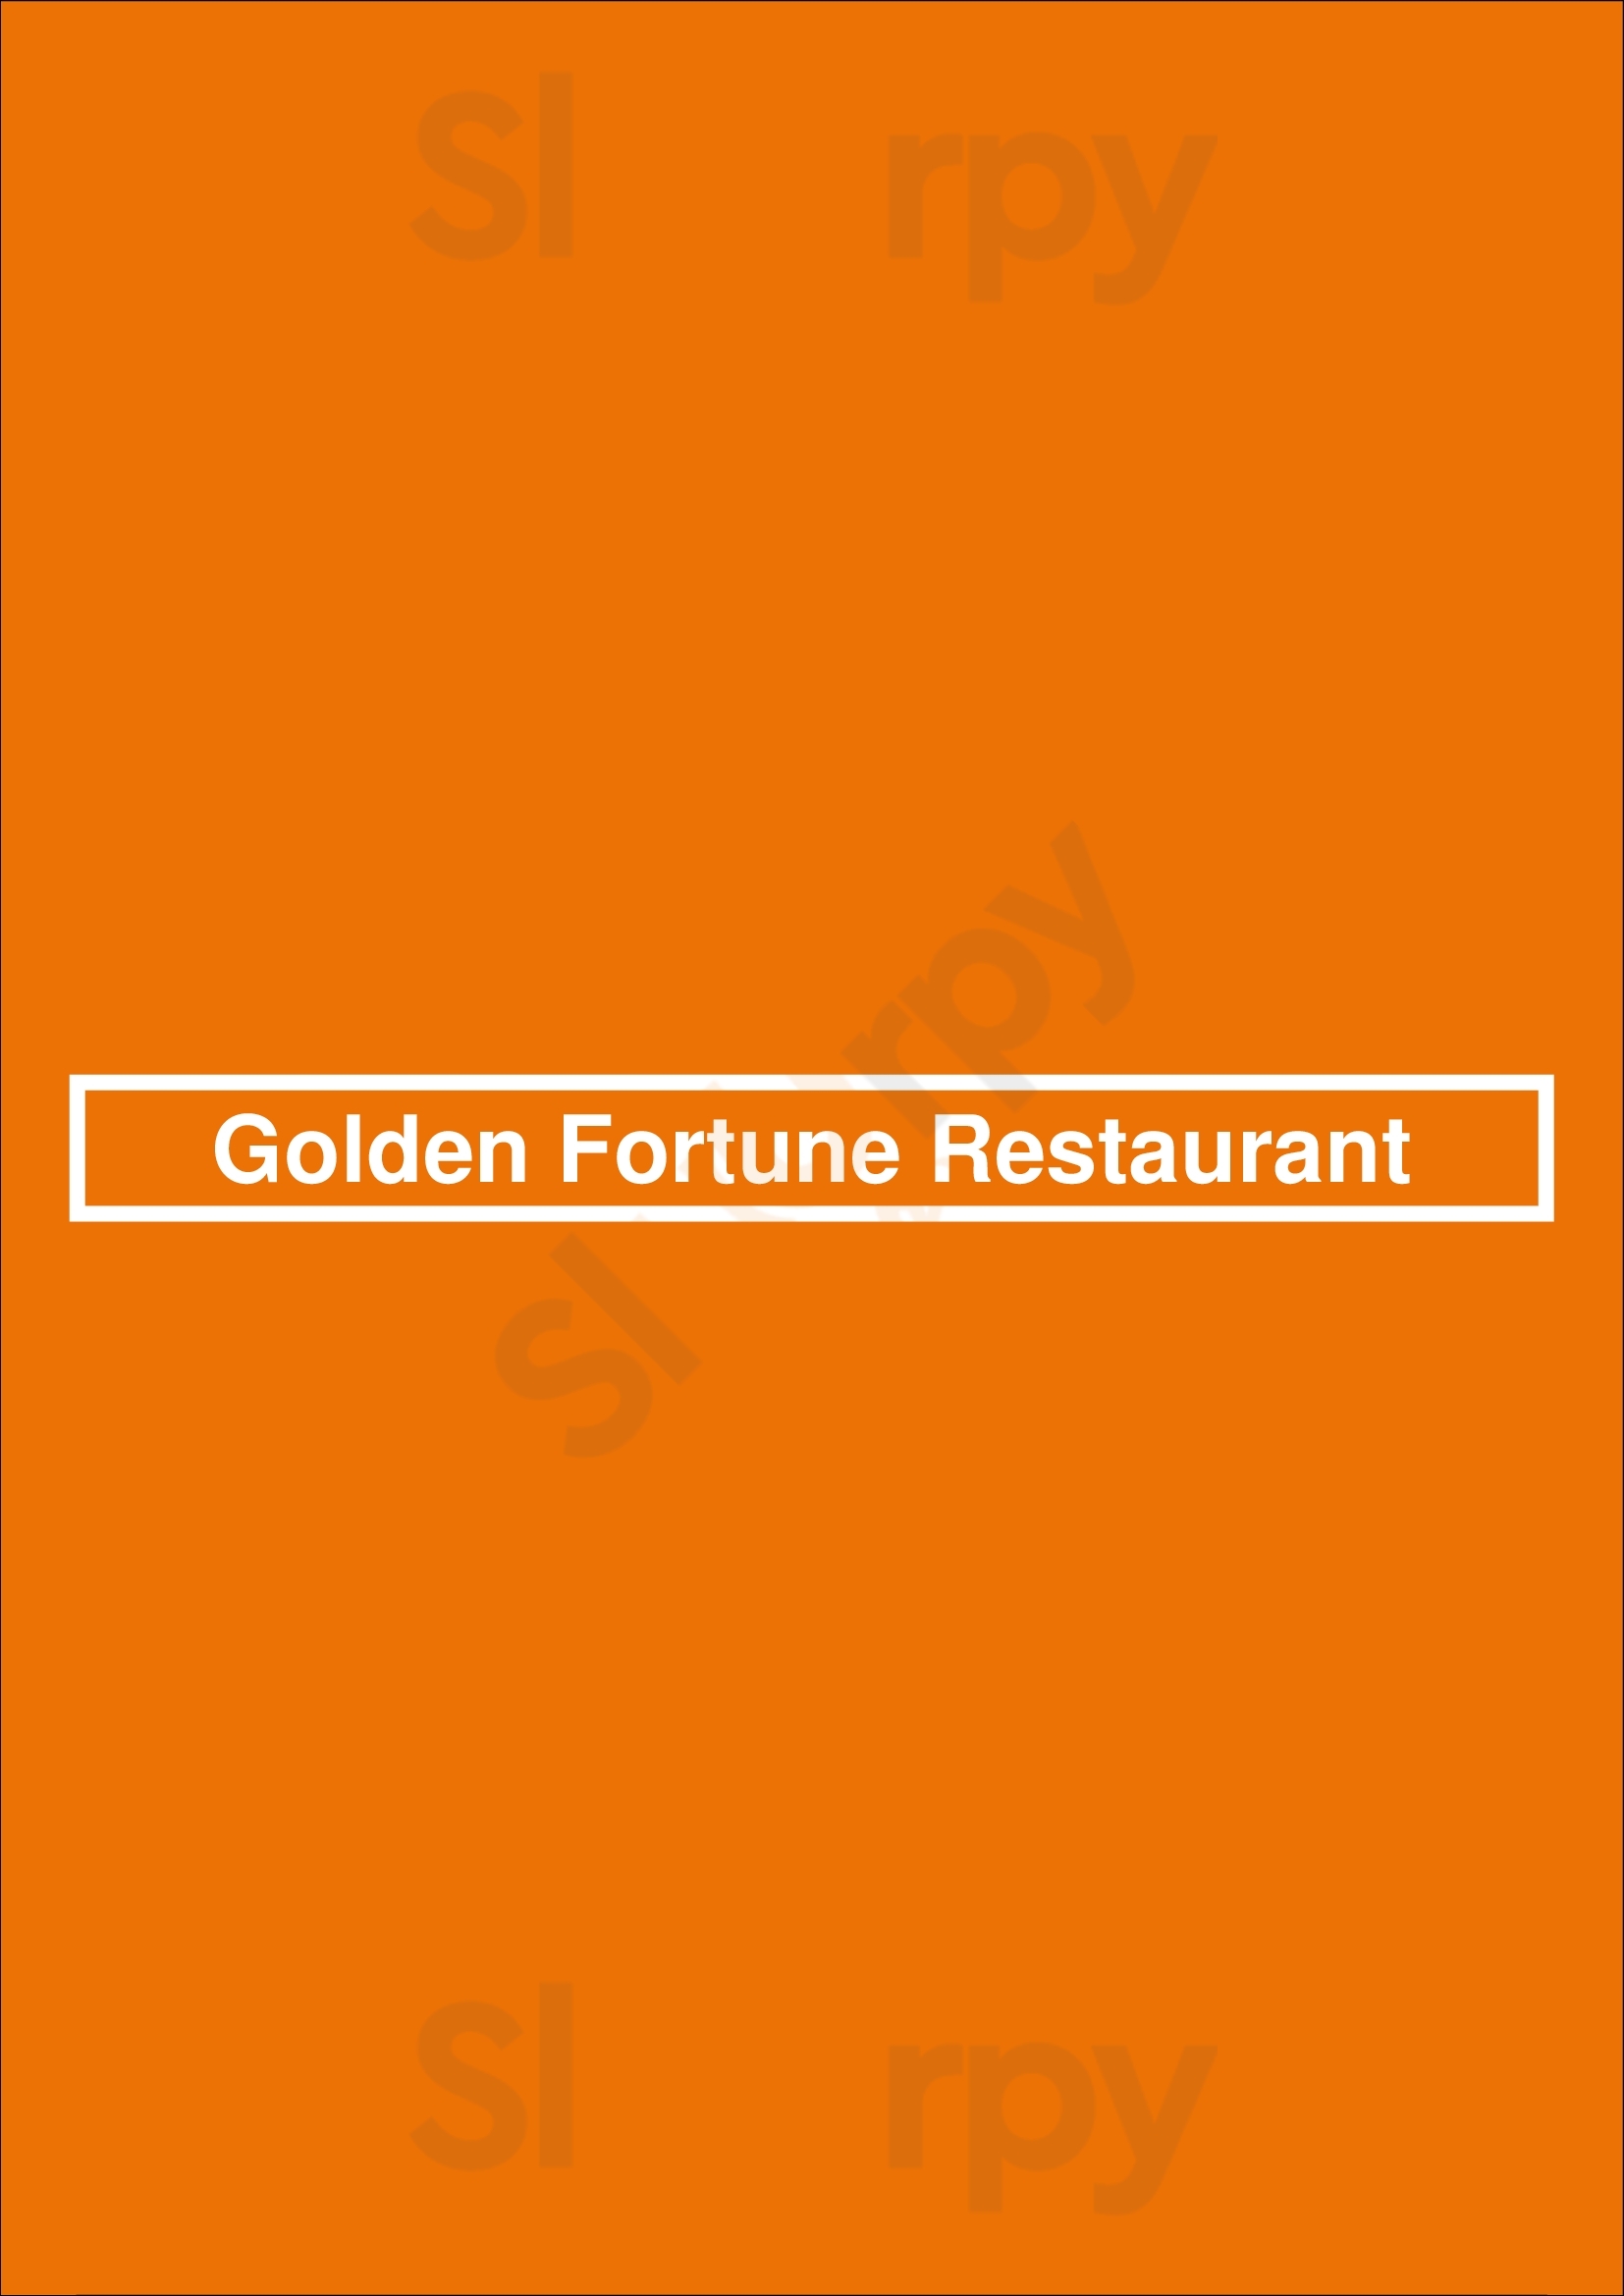 Golden Fortune Restaurant Halifax Menu - 1